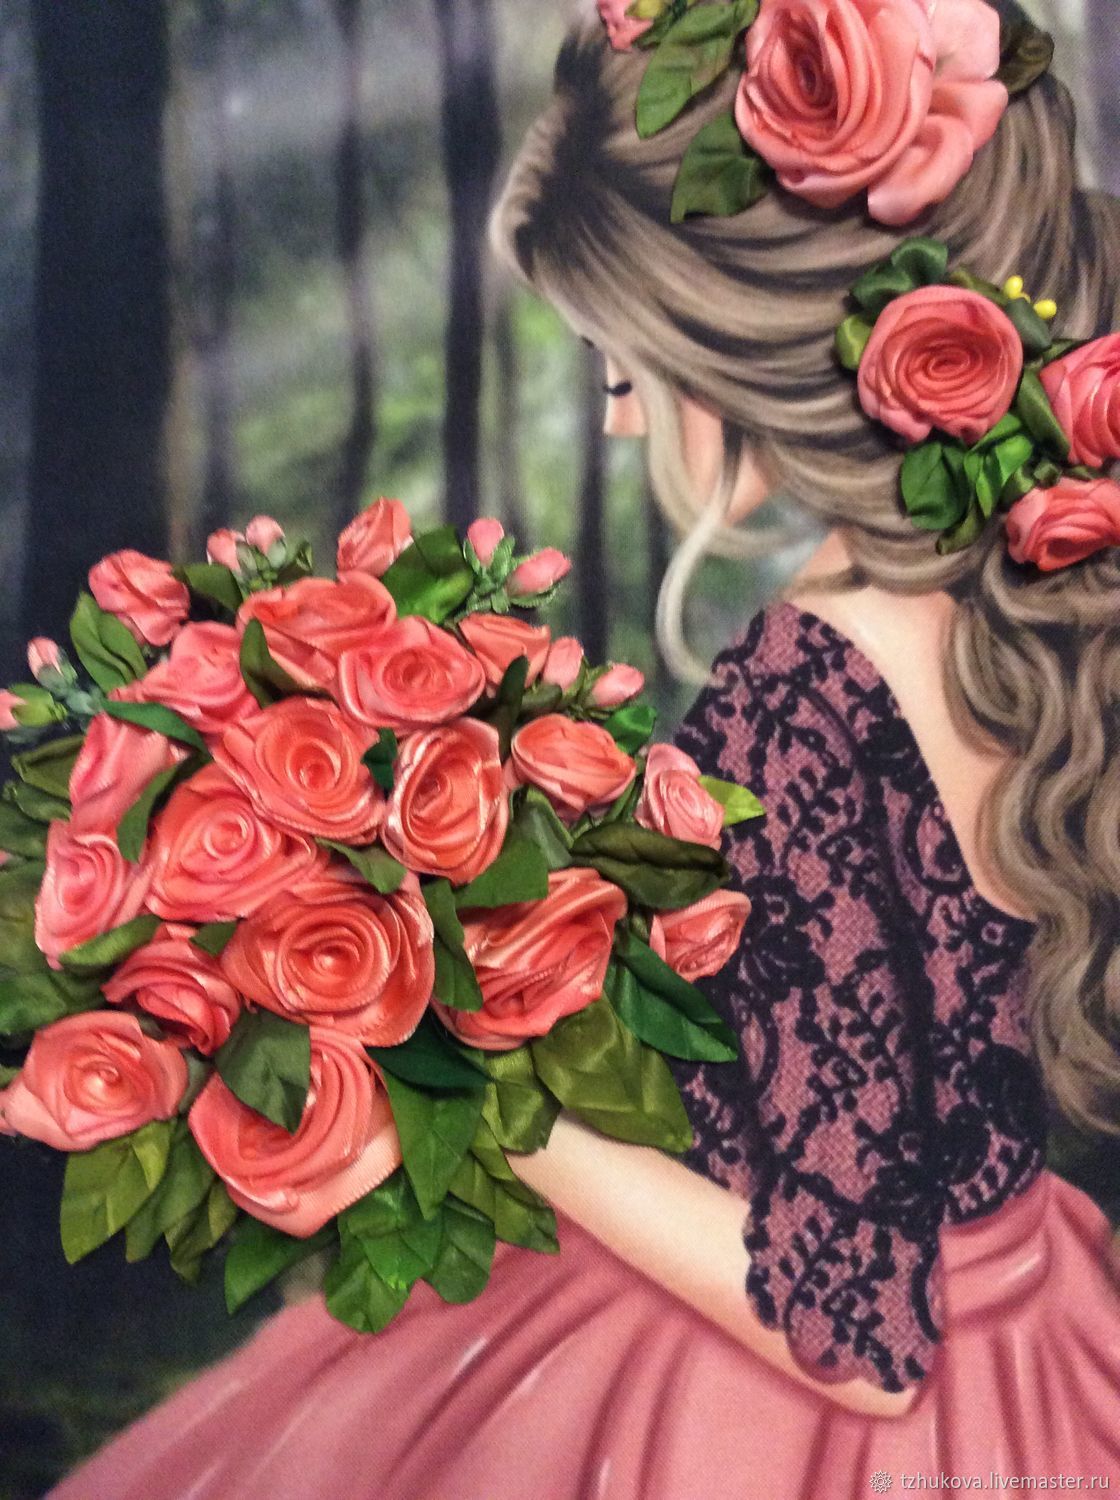 Фото по запросу Девушка с розами